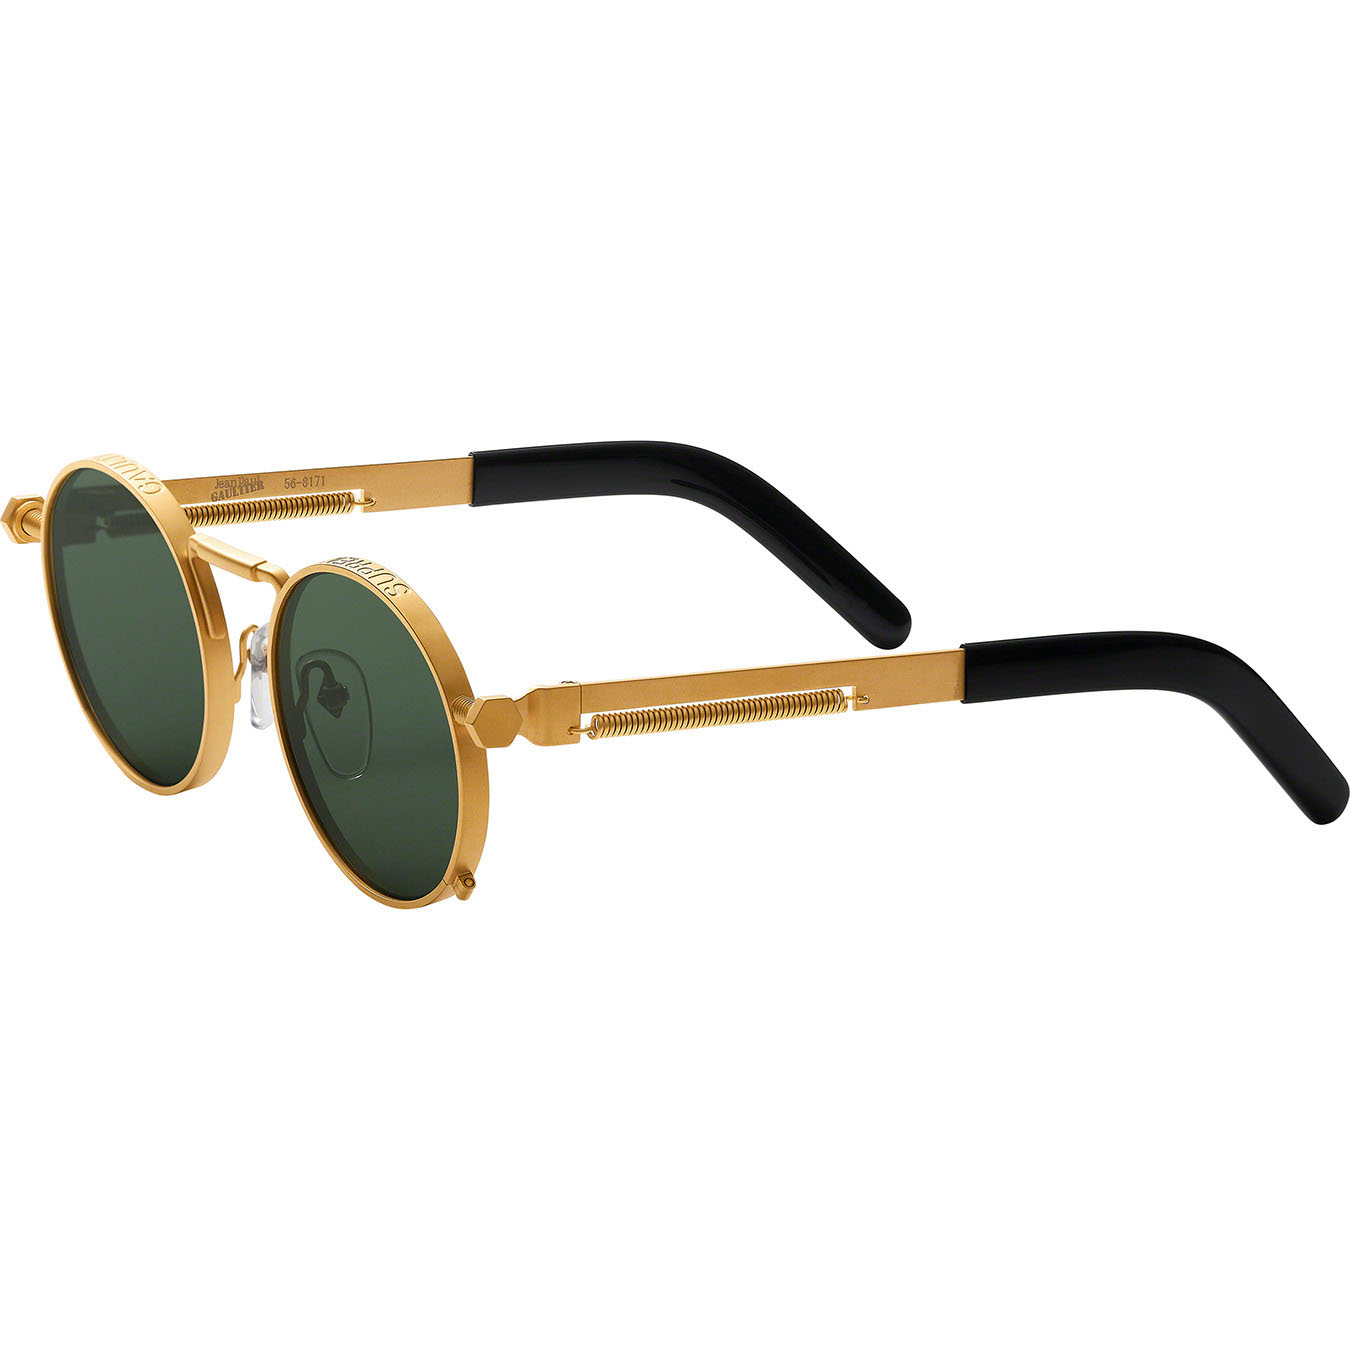 Supreme®/Jean Paul Gaultier® Sunglasses